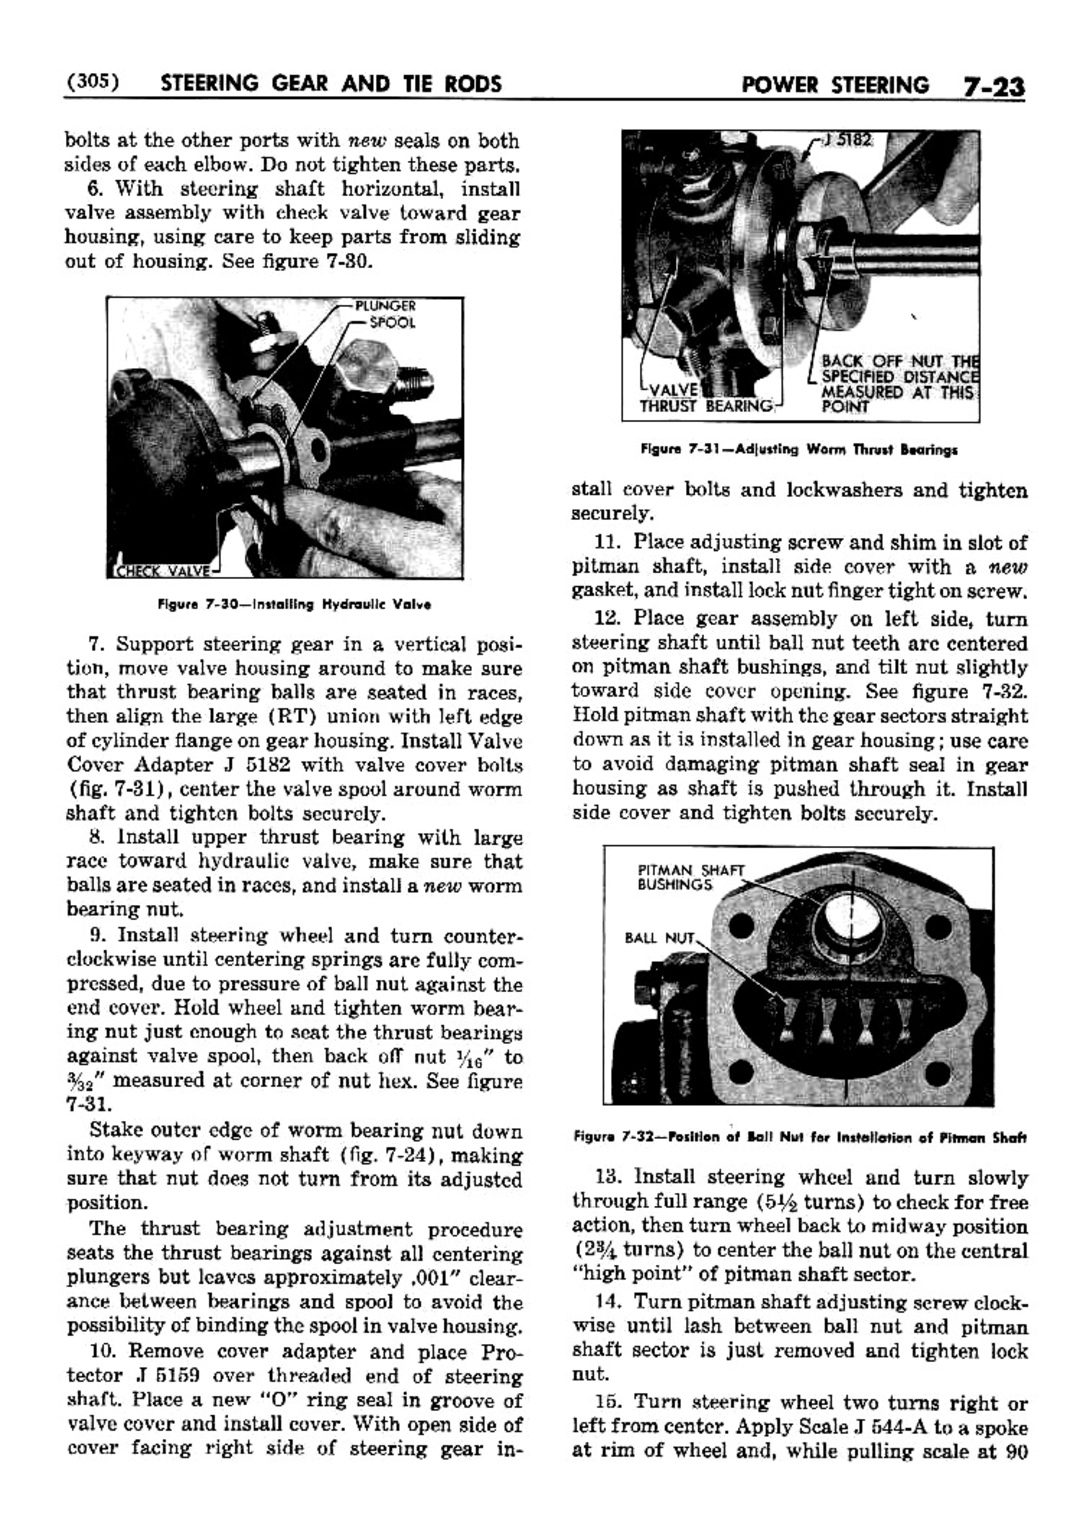 n_08 1952 Buick Shop Manual - Steering-023-023.jpg